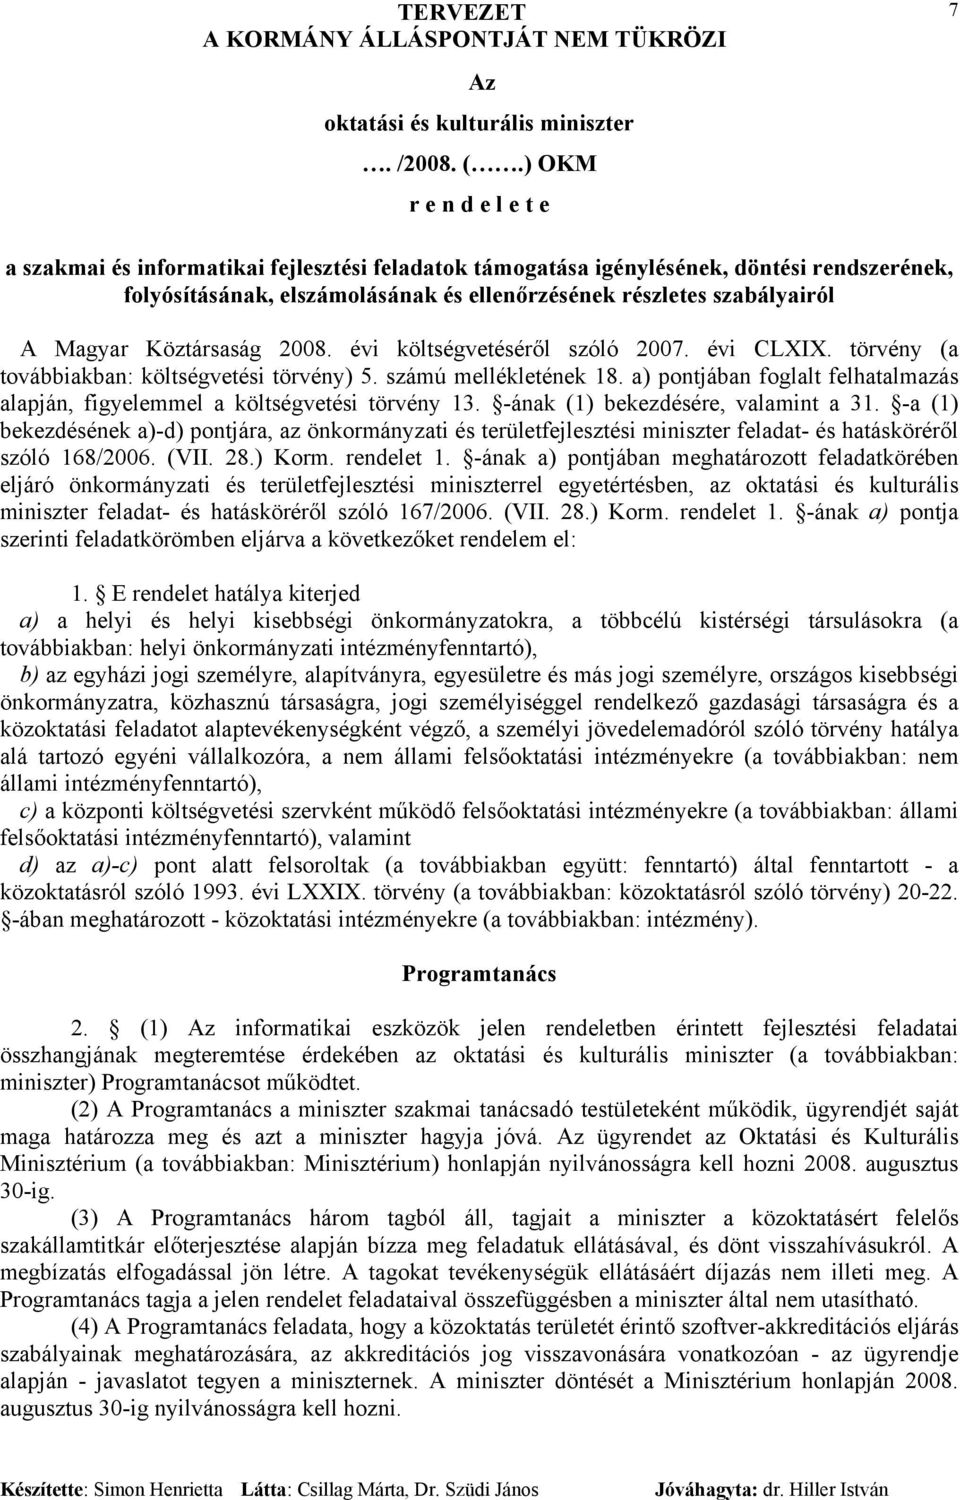 Magyar Köztársaság 2008. évi költségvetéséről szóló 2007. évi CLXIX. törvény (a továbbiakban: költségvetési törvény) 5. számú mellékletének 18.